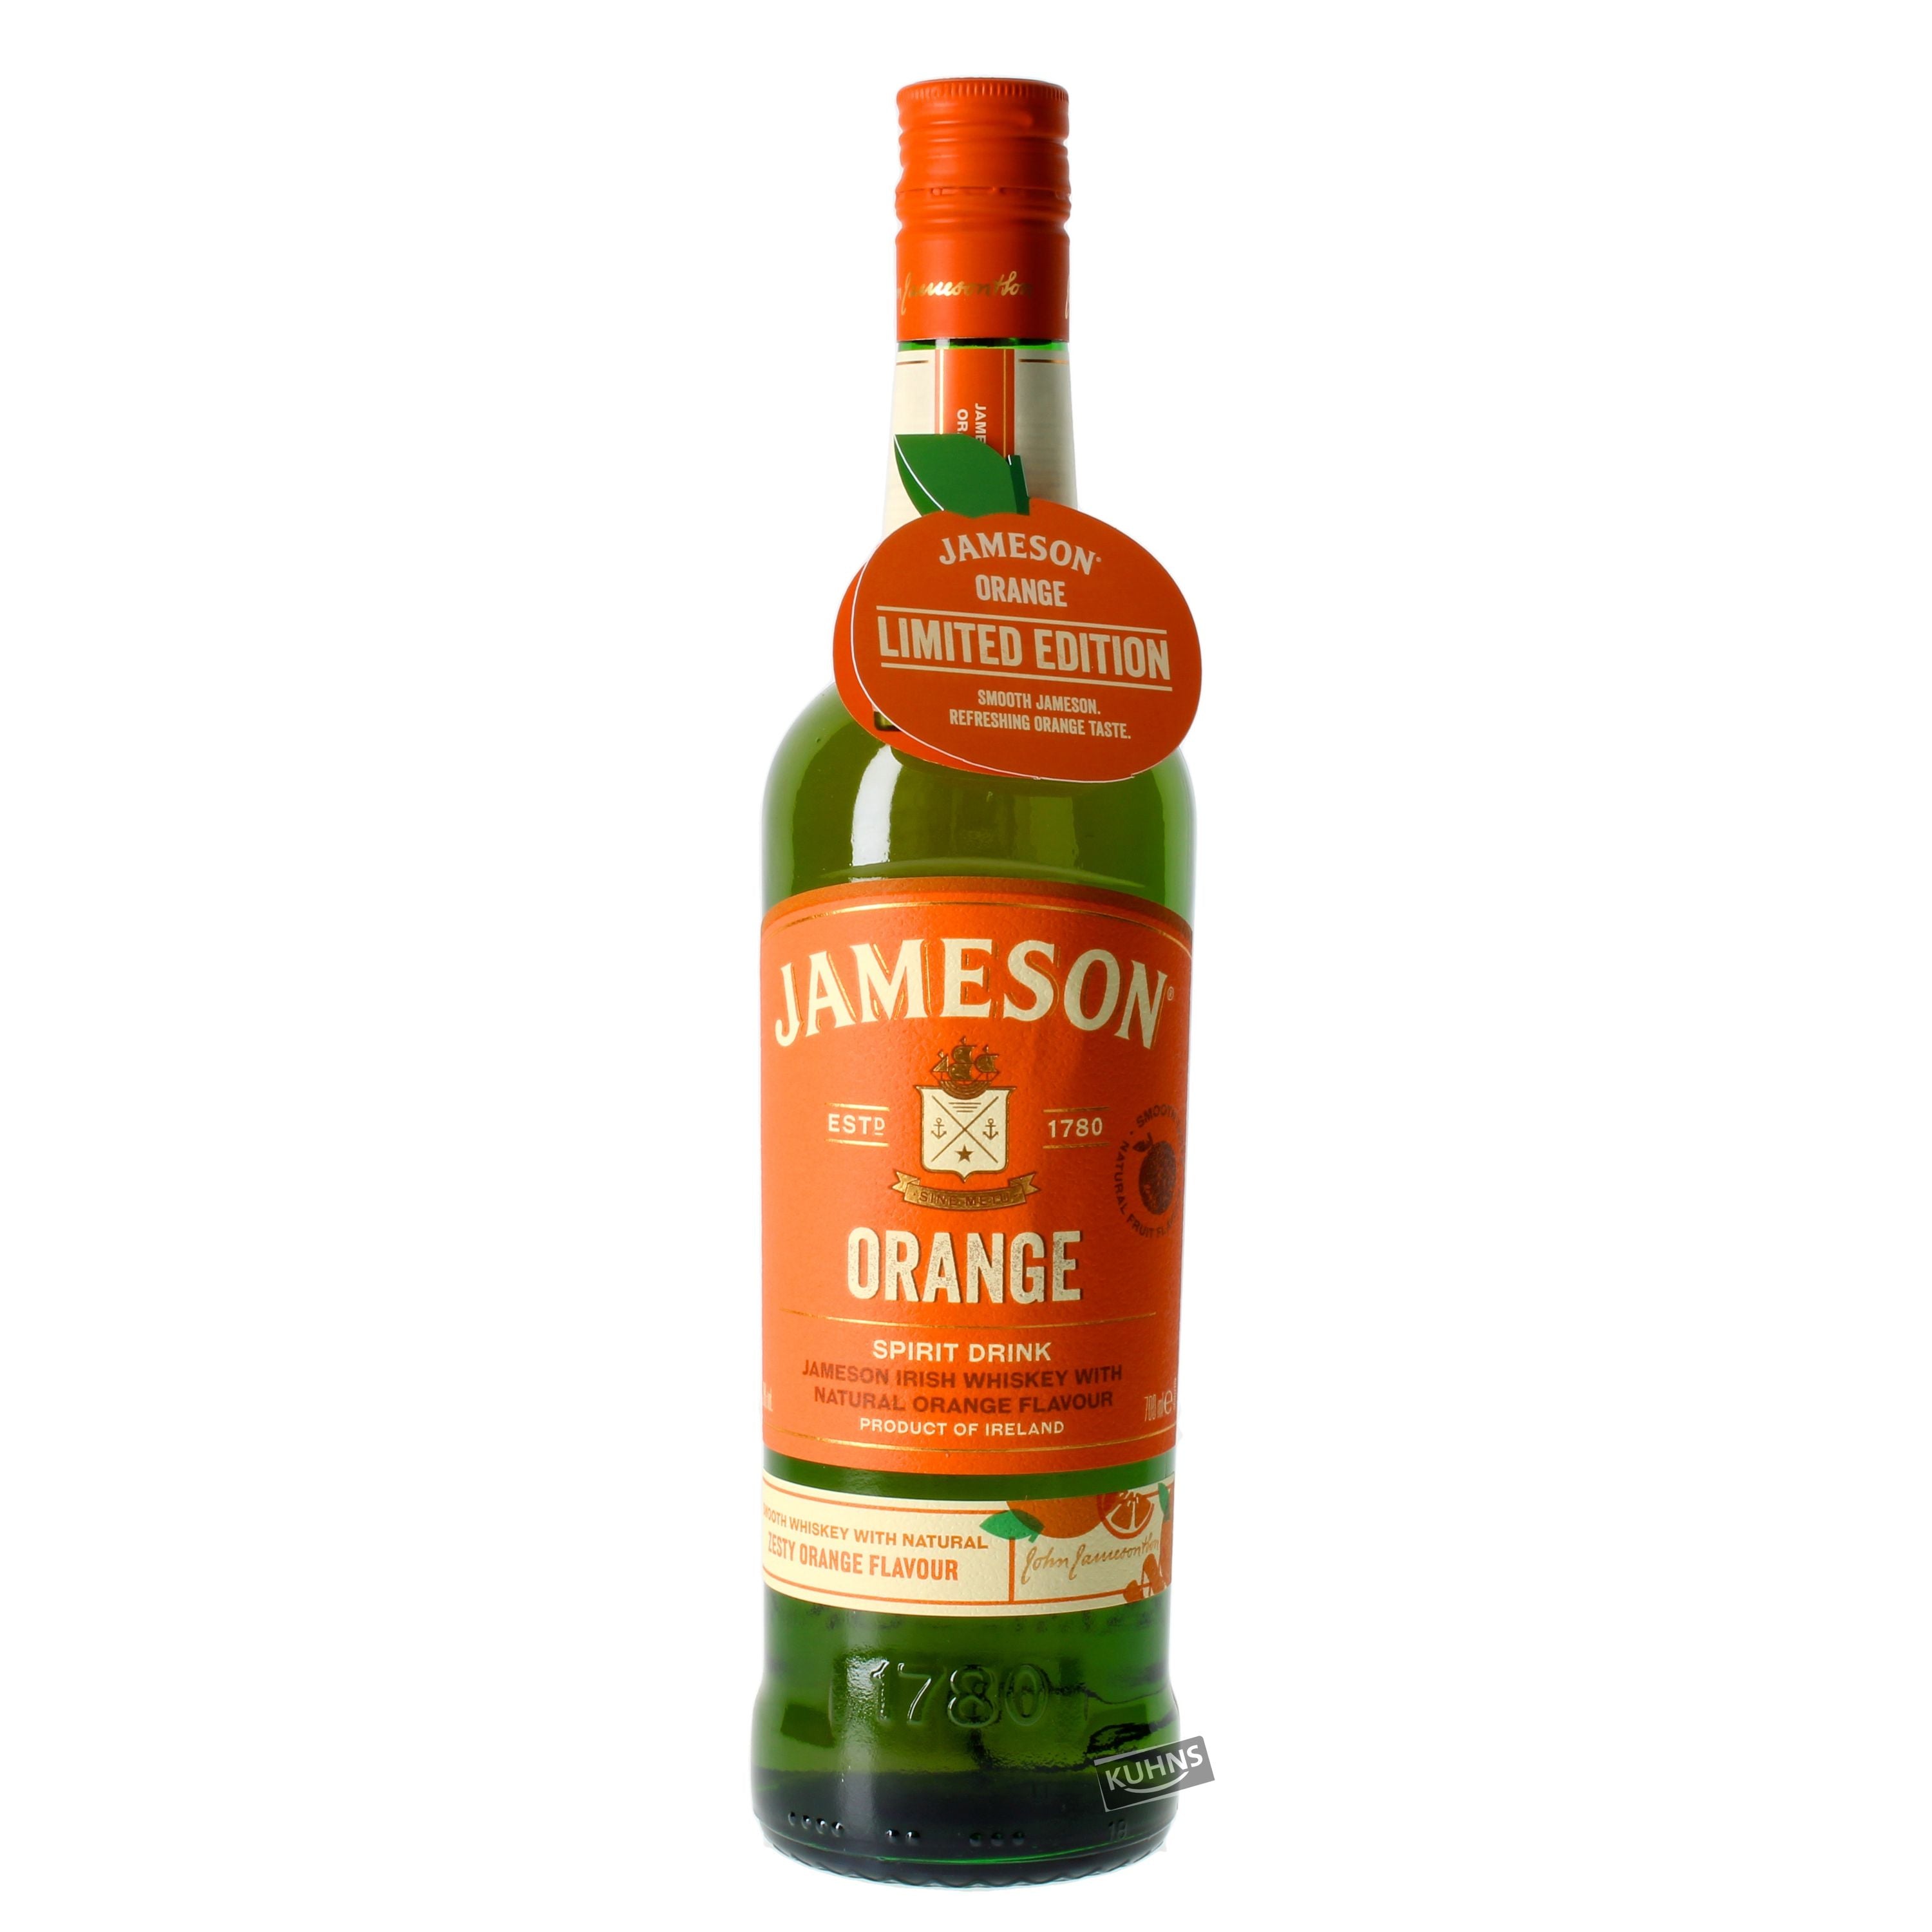 Jameson Orange Spirit Drink, 0.7l, alc. 30% by volume